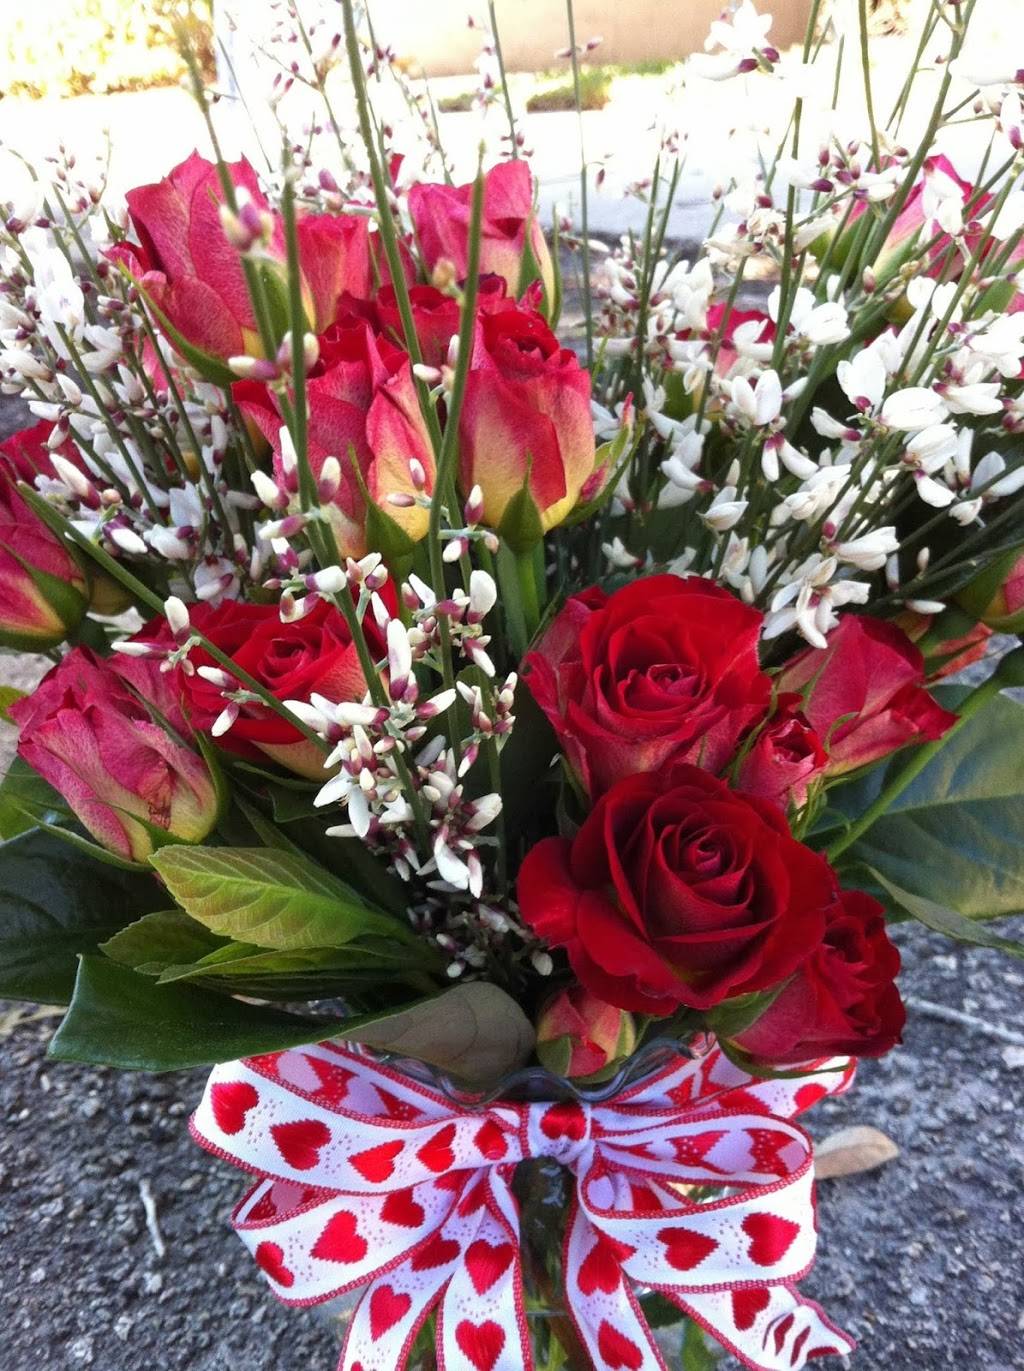 Bonnies Floral Designs | 1850 Emerson St, Jacksonville, FL 32207 | Phone: (904) 346-3300